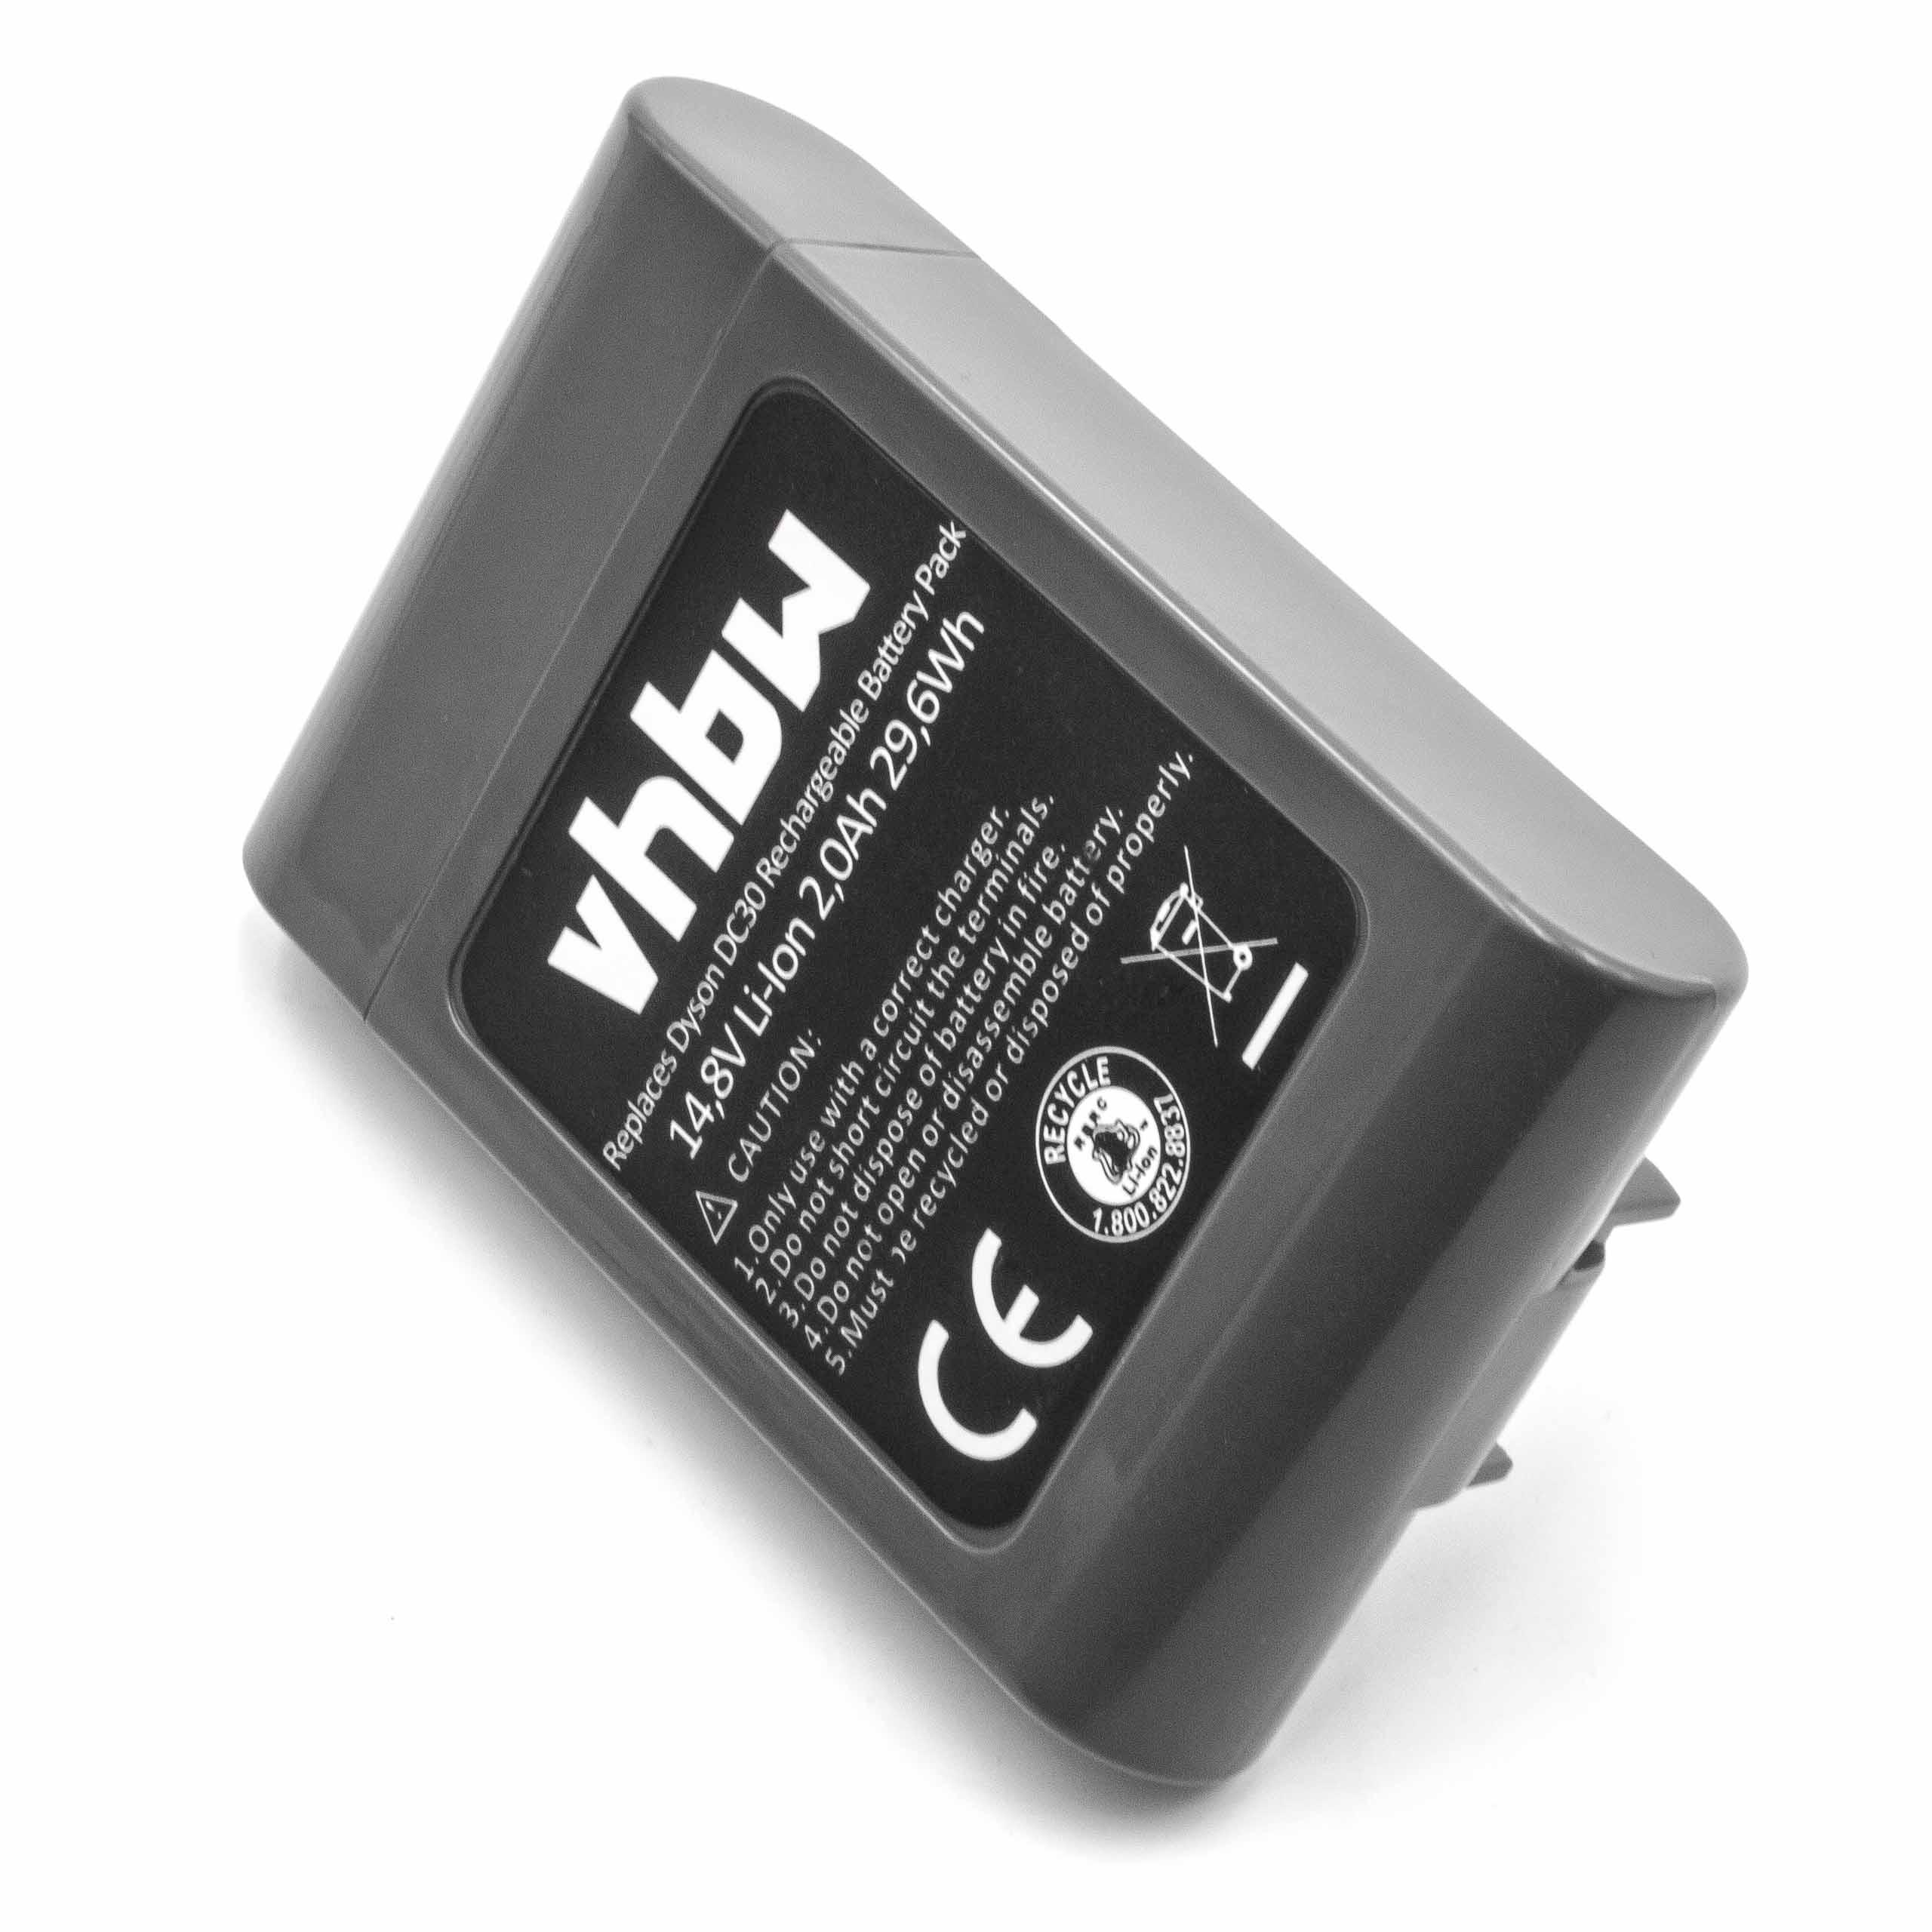 Batterie remplace Dyson 17083-3009, 17083-01-03, 17083-11 10 pour aspirateur - 2000mAh 14,8V Li-ion, gris